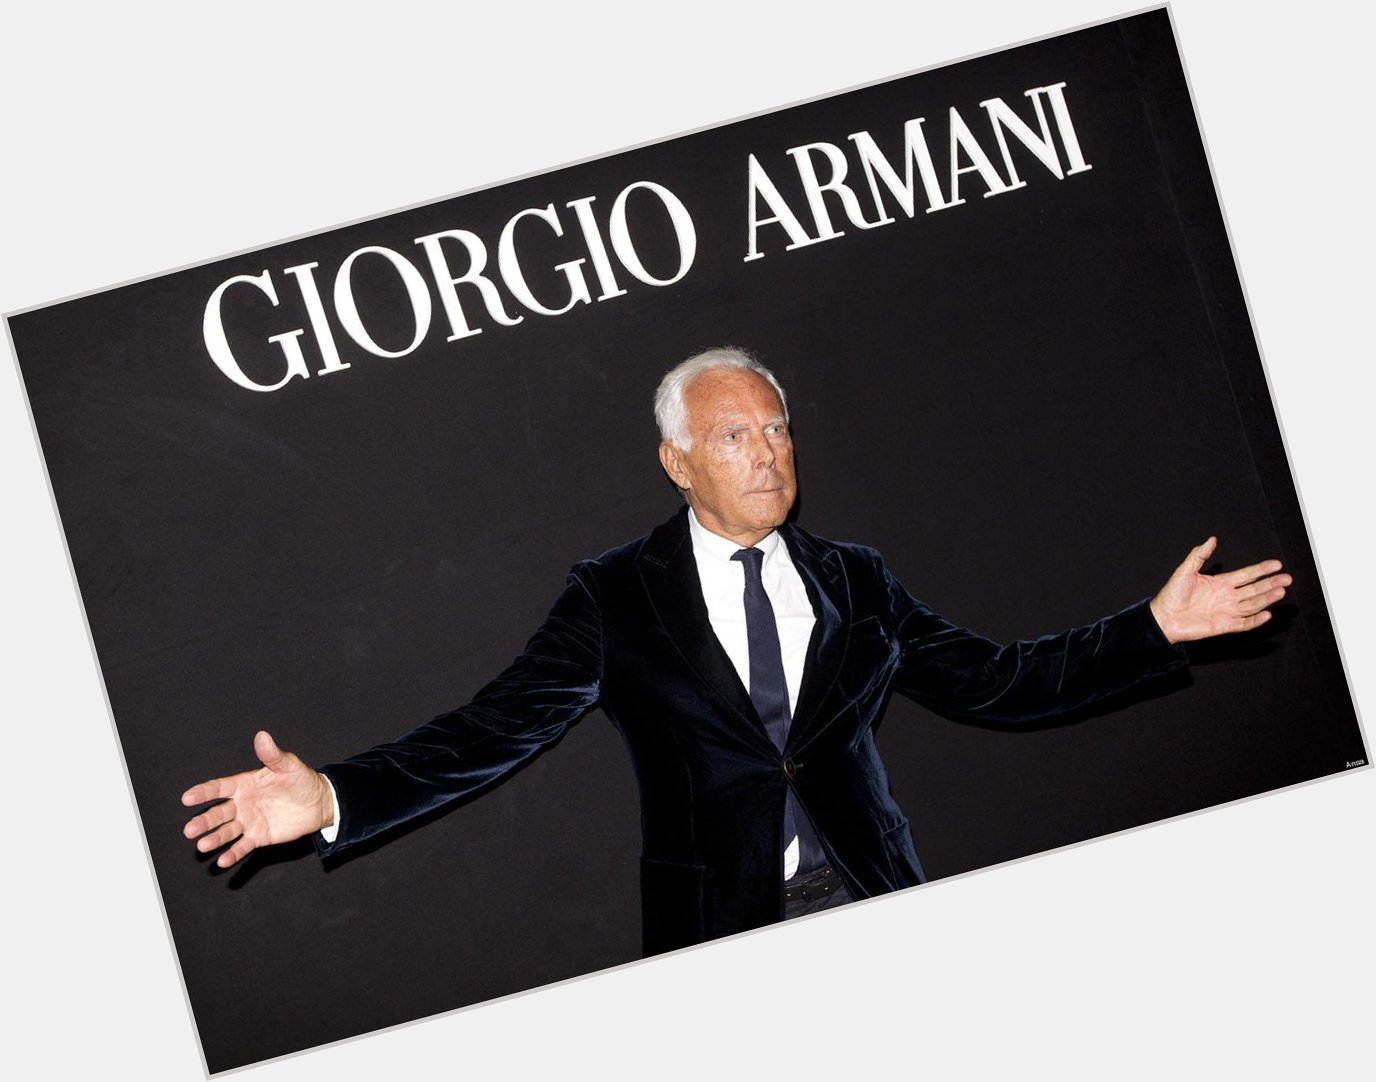 Happy birthday Giorgio Armani(born 11.7.1934)  